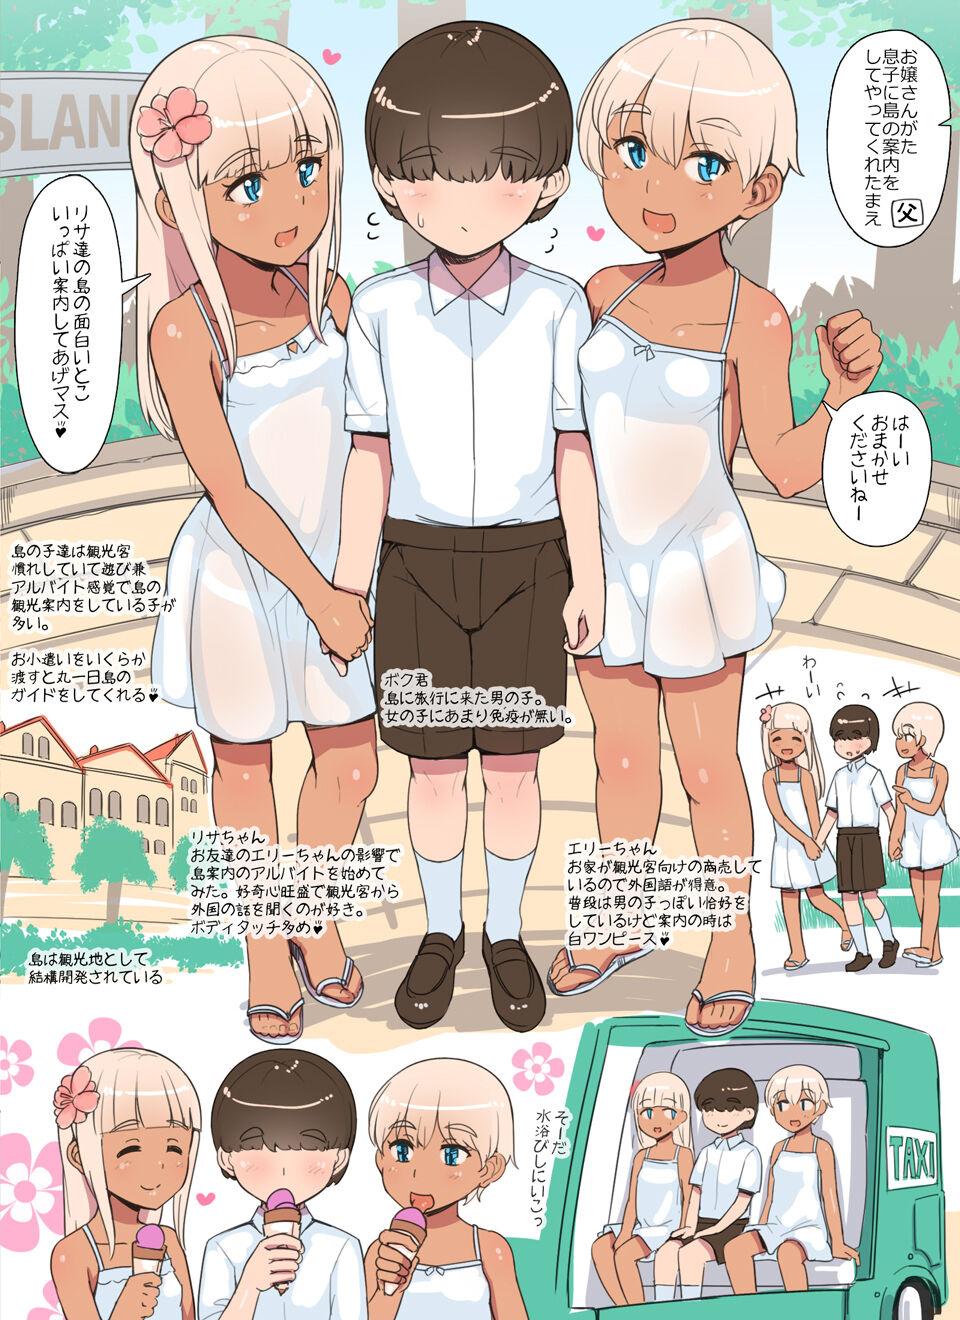 Shota ga Kasshoku Loli ni Shima o Annai Shite Morau Manga | Shota being shown around the island by brown Loli 1